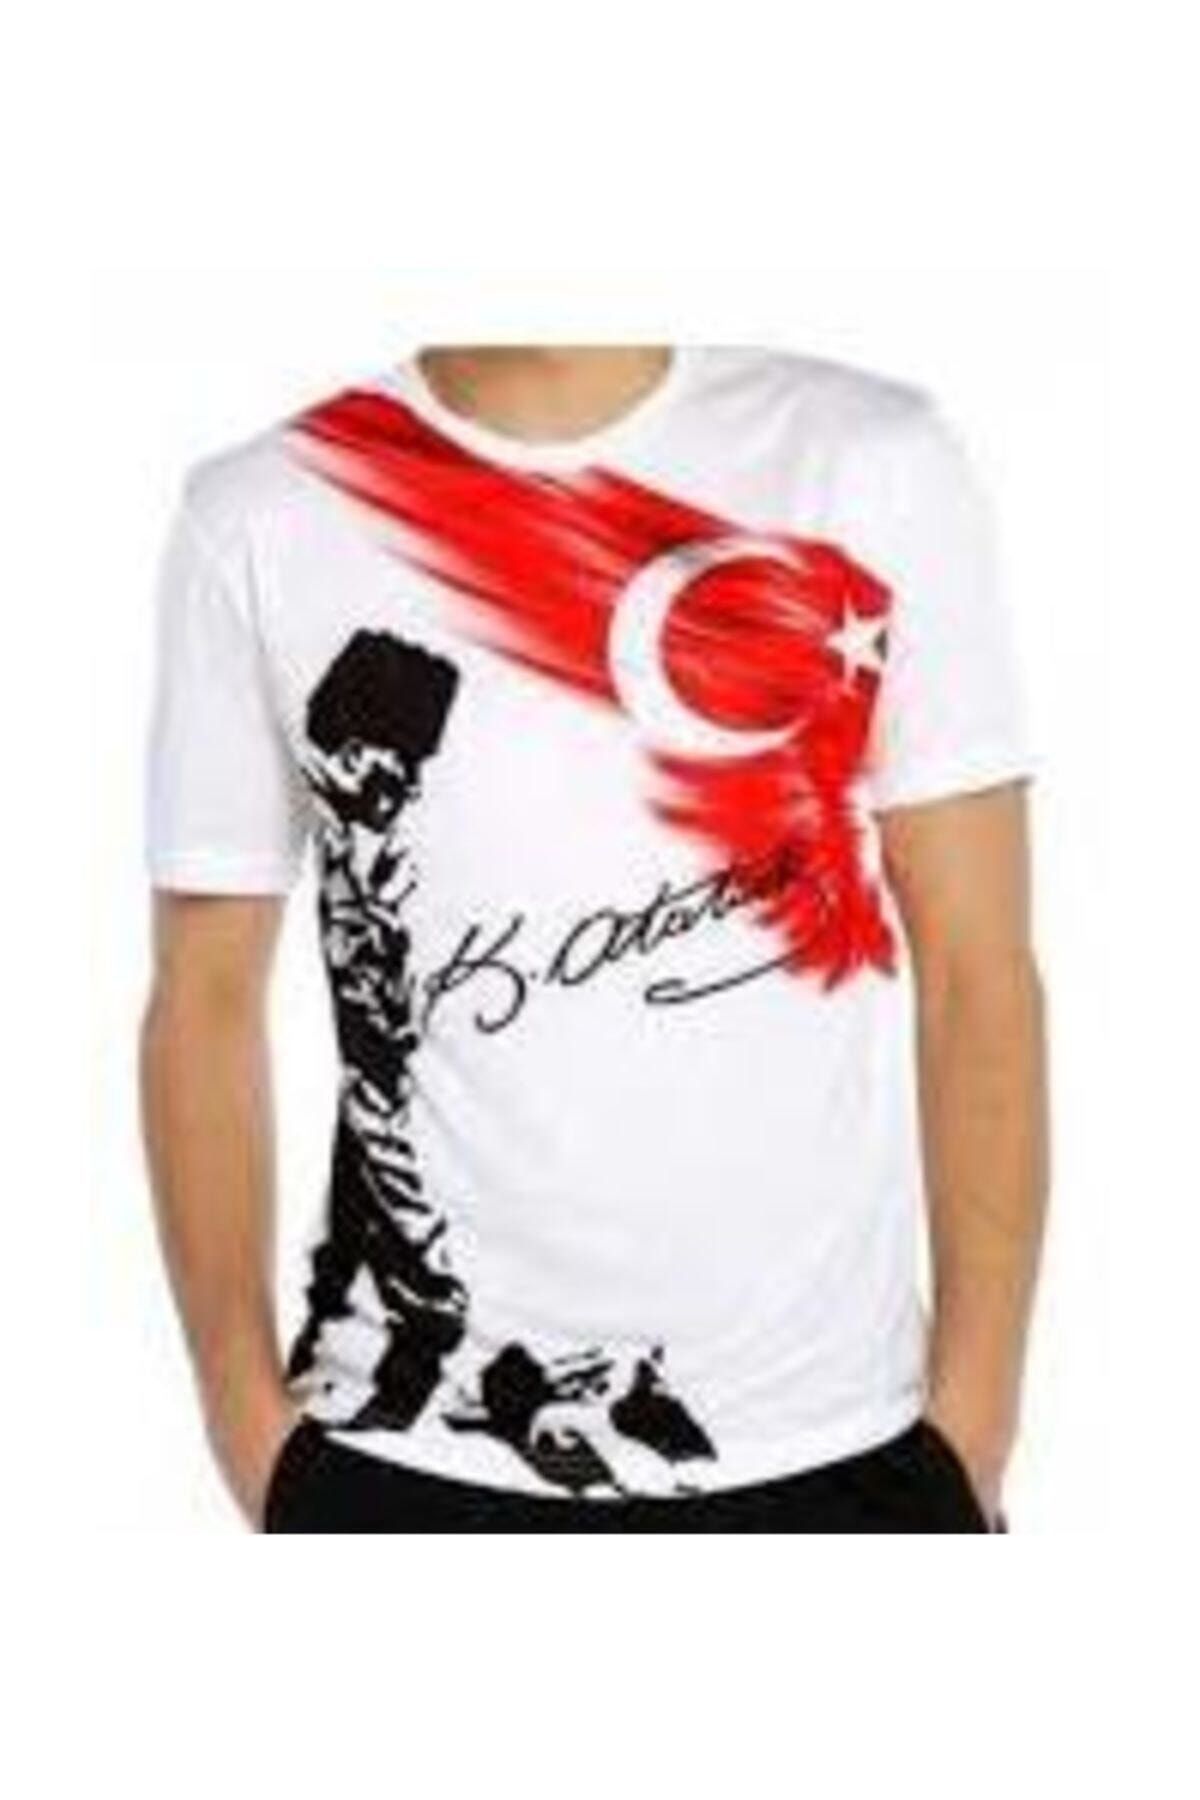 salarticaret Unisex Beyaz Atatürk Kocatepe T-shirt